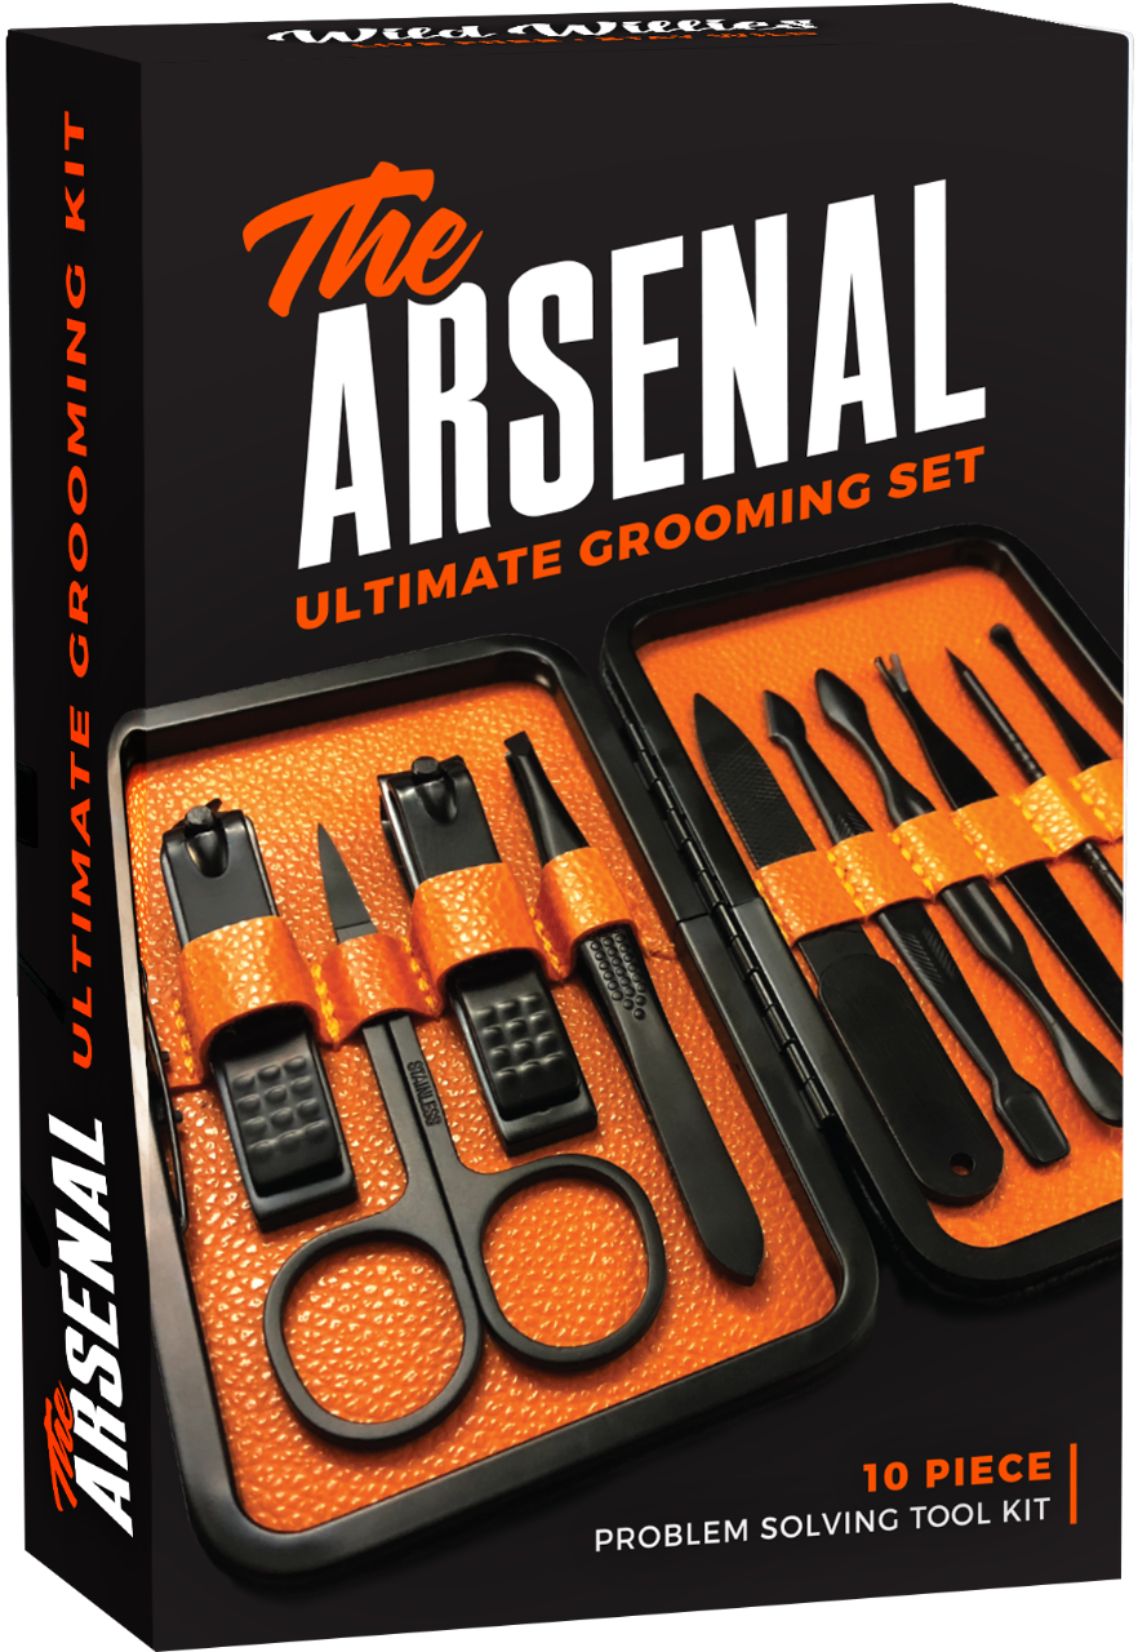 ultimate men's grooming kit